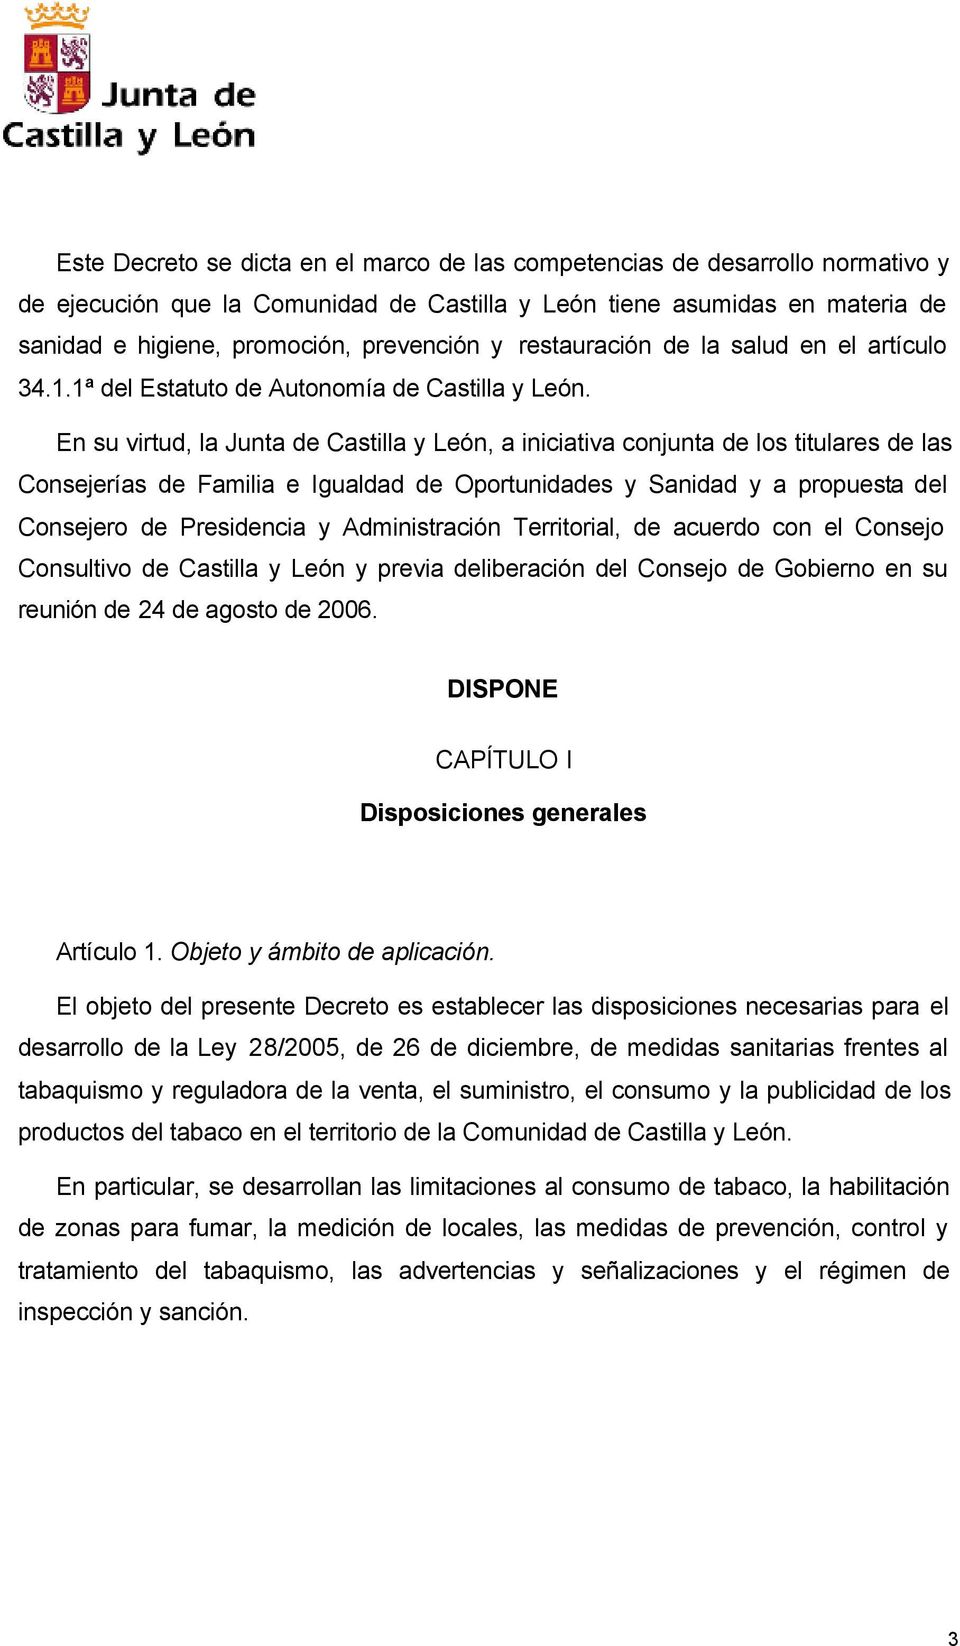 En su virtud, la Junta de Castilla y León, a iniciativa conjunta de los titulares de las Consejerías de Familia e Igualdad de Oportunidades y Sanidad y a propuesta del Consejero de Presidencia y